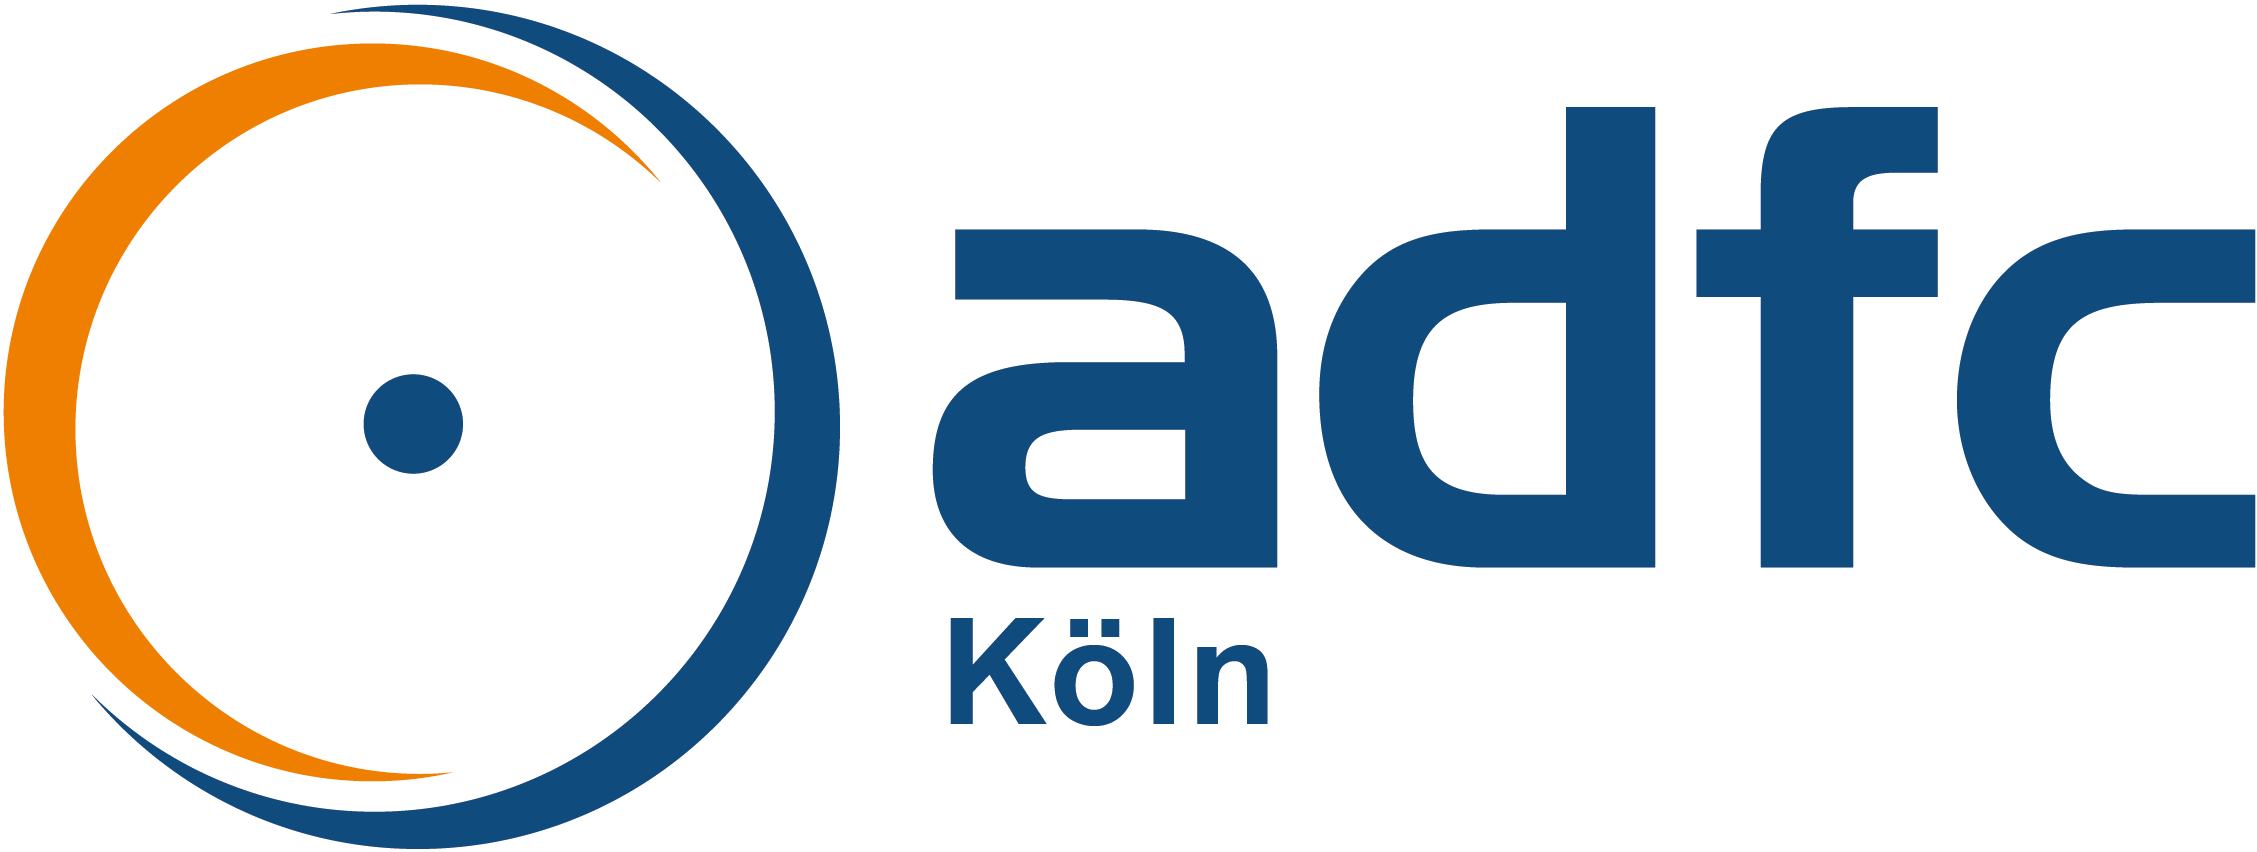 Logo ADFC Köln.png